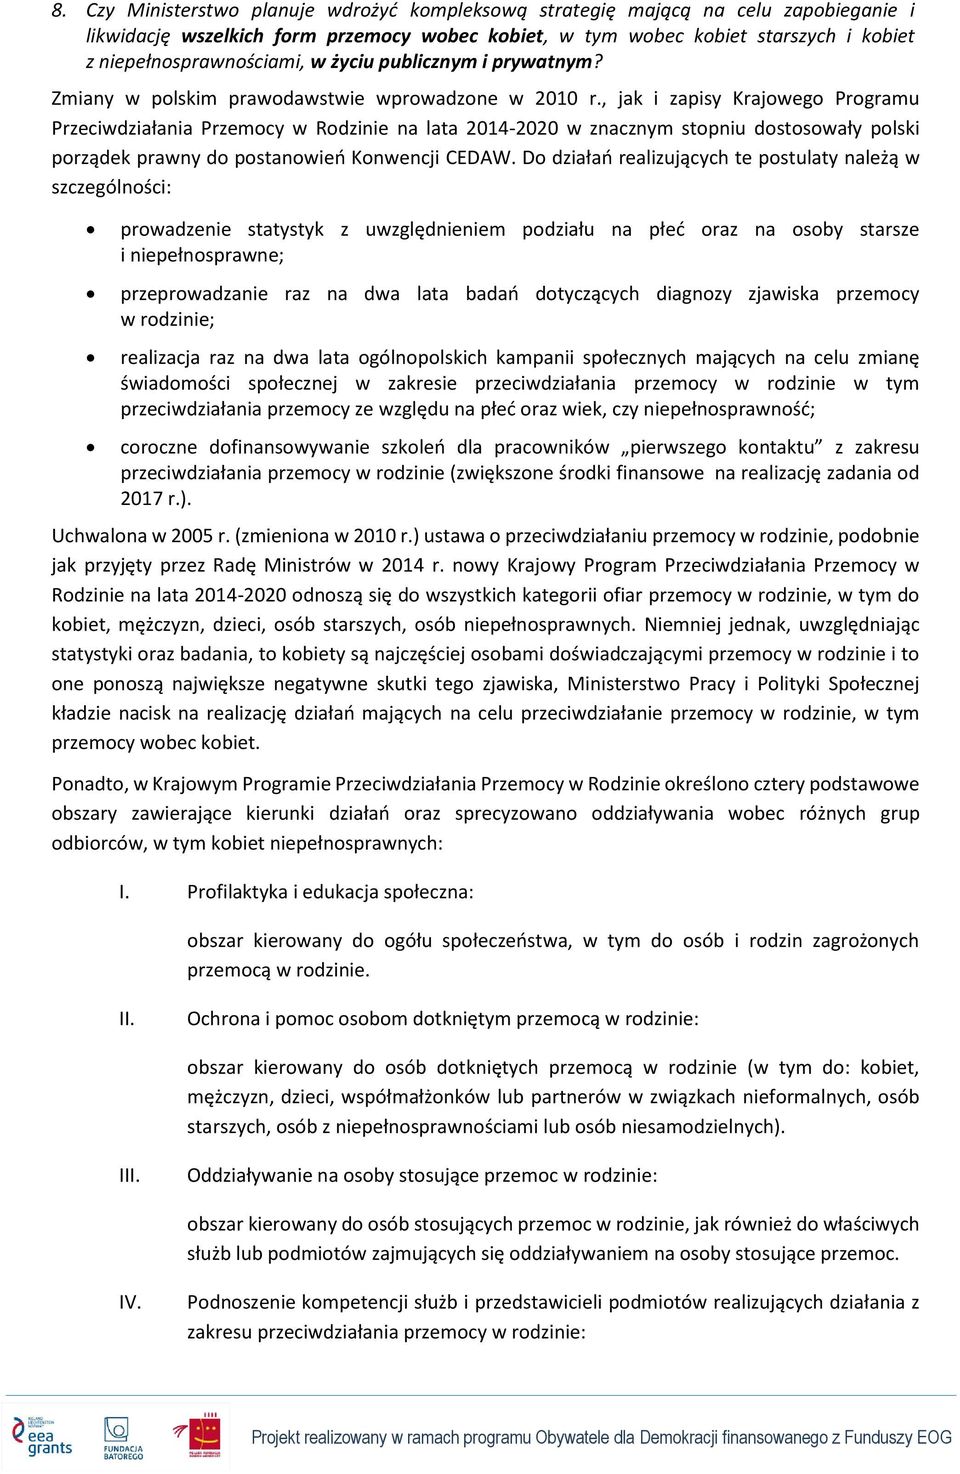 , jak i zapisy Krajowego Programu Przeciwdziałania Przemocy w Rodzinie na lata 2014-2020 w znacznym stopniu dostosowały polski porządek prawny do postanowień Konwencji CEDAW.